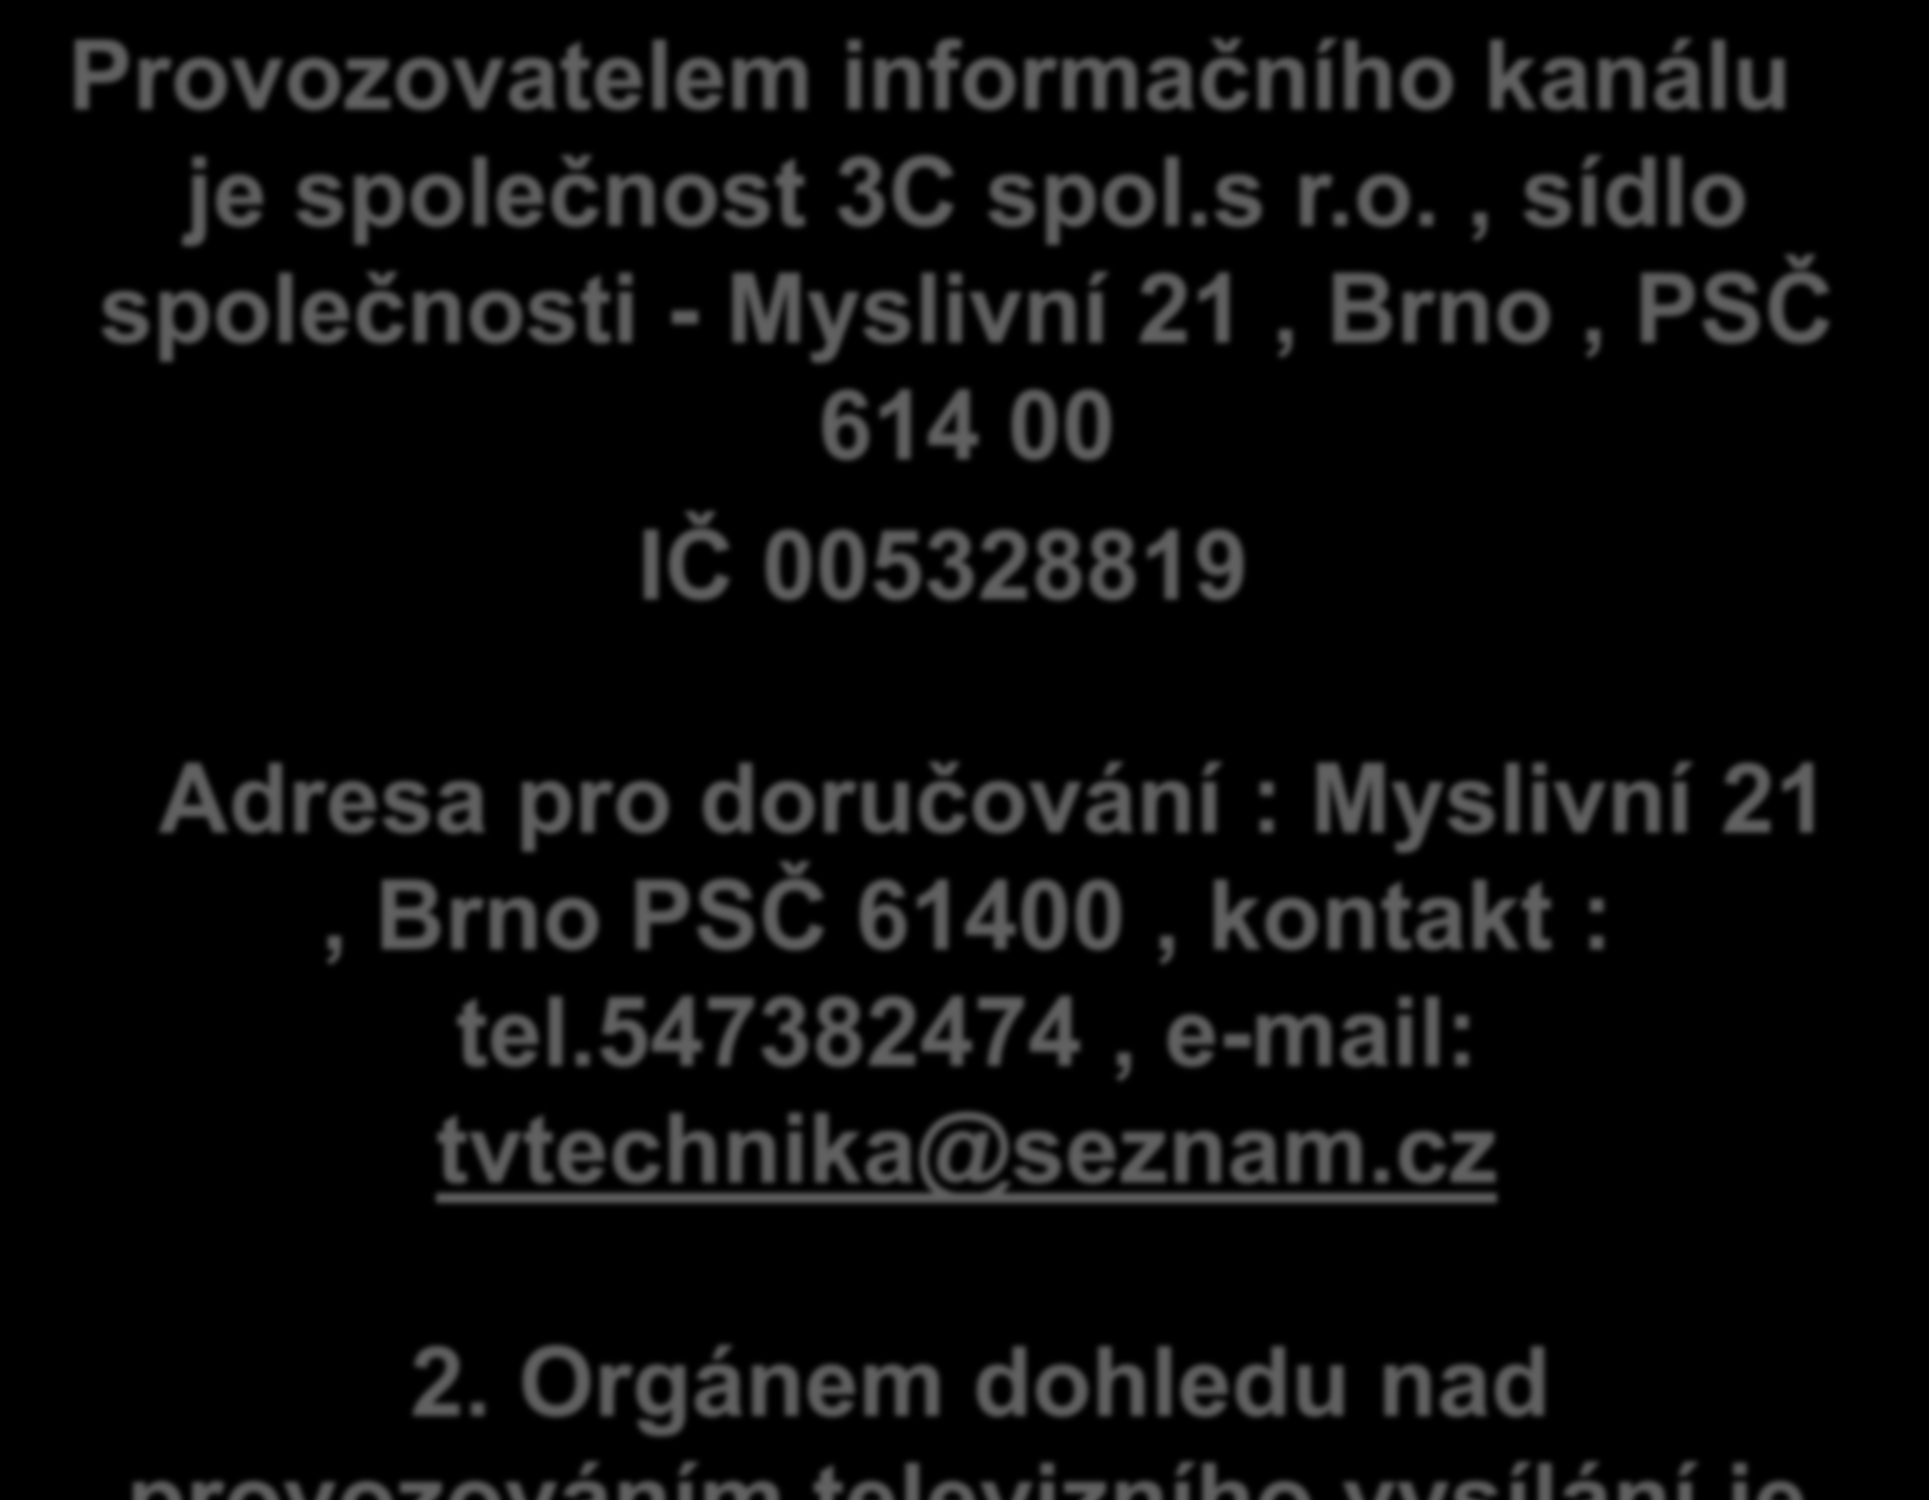 Provozovatelem informačního kanálu je společnost 3C spol.s r.o., sídlo společnosti - Myslivní 21, Brno, PSČ 614 00 IČ 005328819